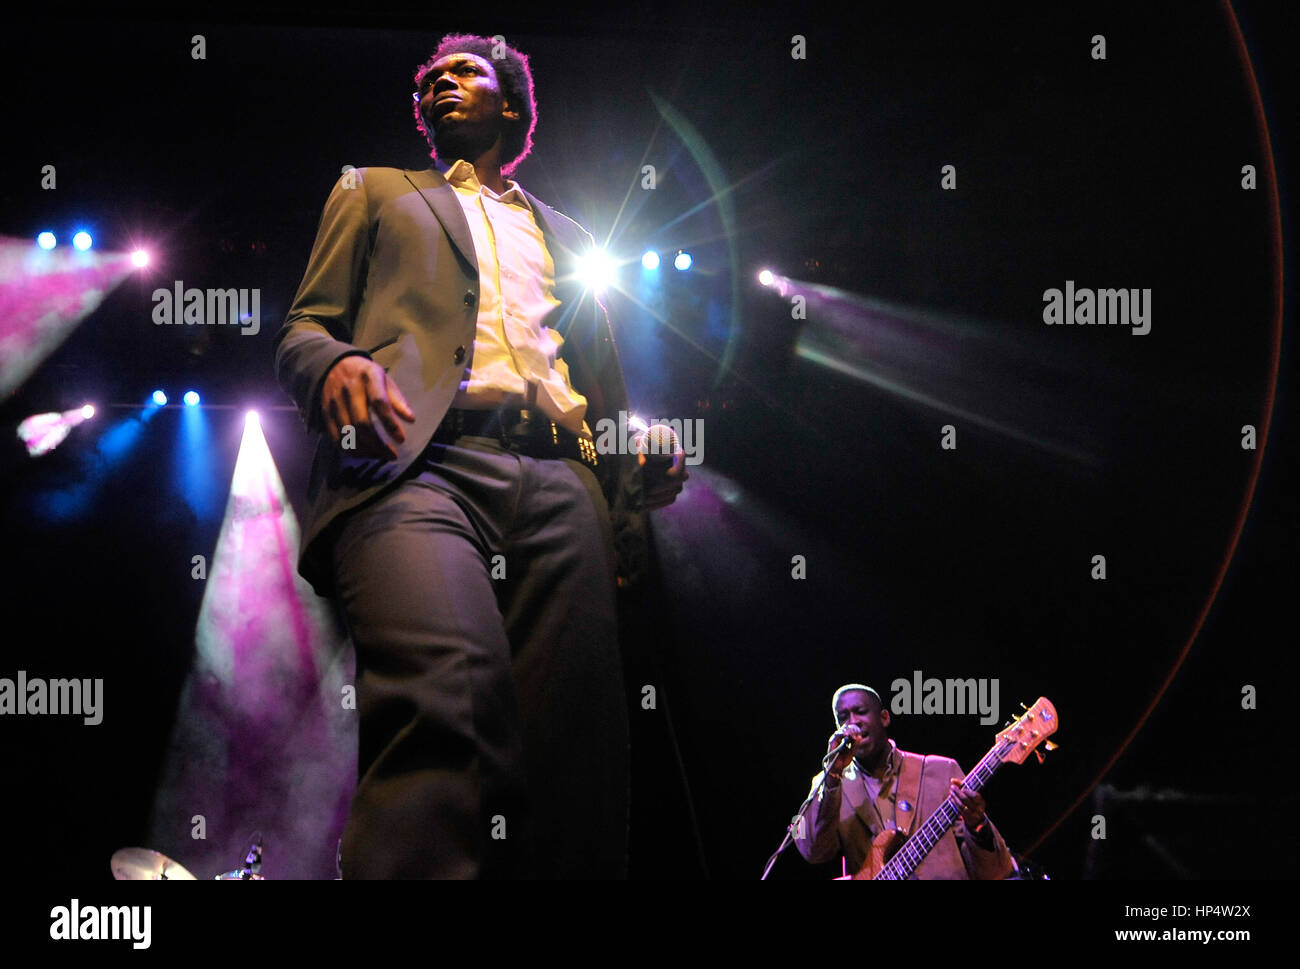 11.02.2011 DUDELANGE, Luxemburg: belgische Sängerin LubumbashiBelgian Rapperperfoms bei seinem Konzert in Dudelange, präsentiert seine Kinshasa Succursale ein Stockfoto